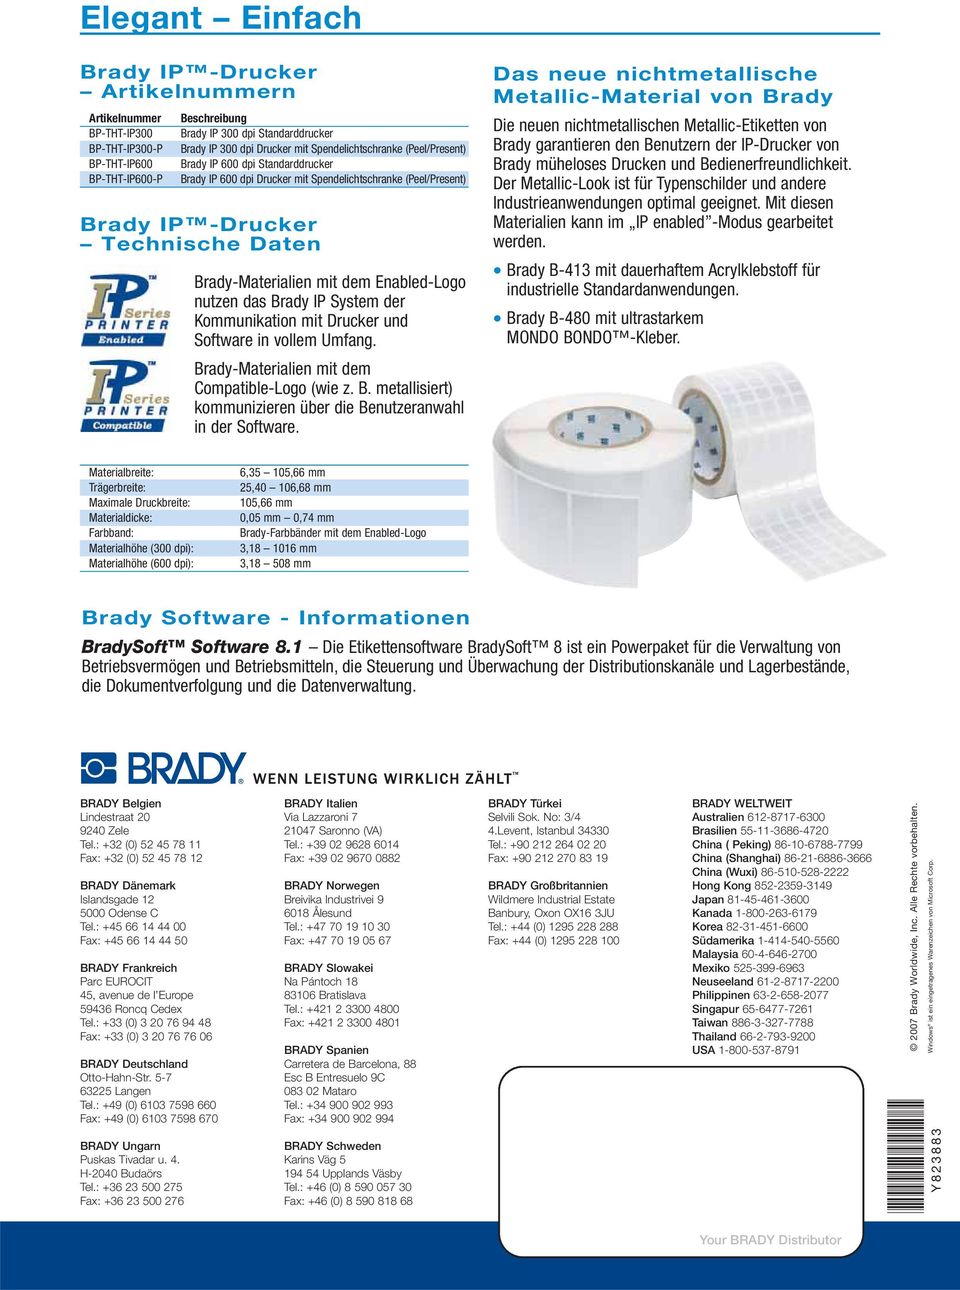 Enabled-Logo nutzen das Brady IP System der Kommunikation mit Drucker und Software in vollem Umfang. Brady-Materialien mit dem Compatible-Logo (wie z. B. metallisiert) kommunizieren über die Benutzeranwahl in der Software.